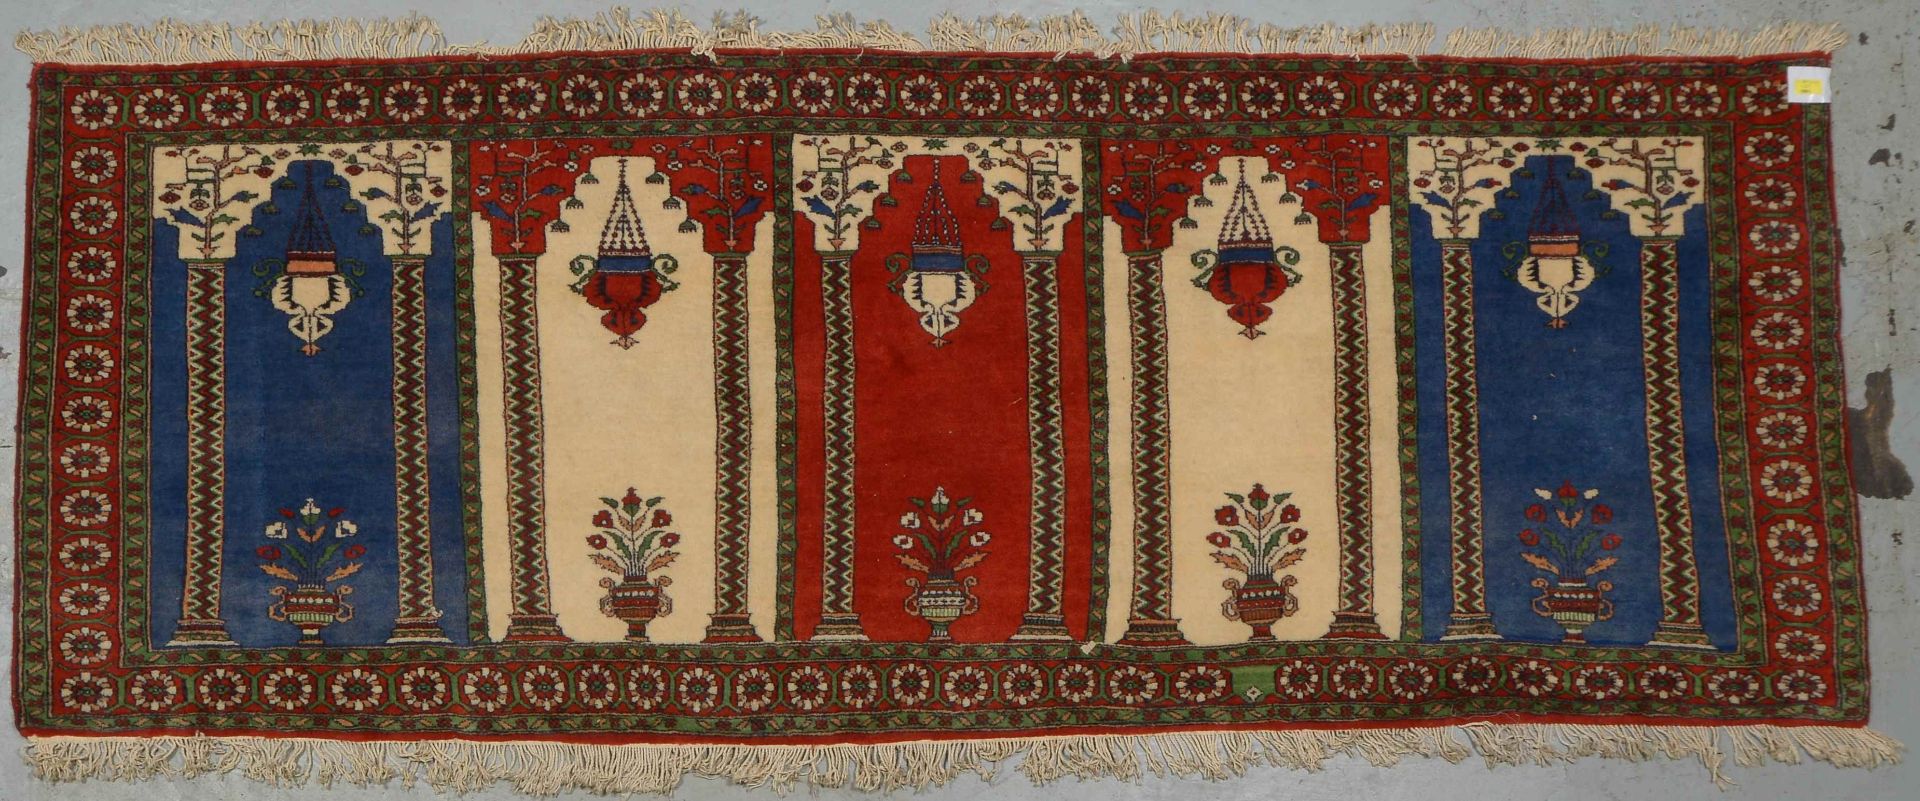 Orientgalerie,  mit Mihrab-Vasenmotiven, Längsseite mit Baumwollfransen, Flor in gutem Zustand; Maße